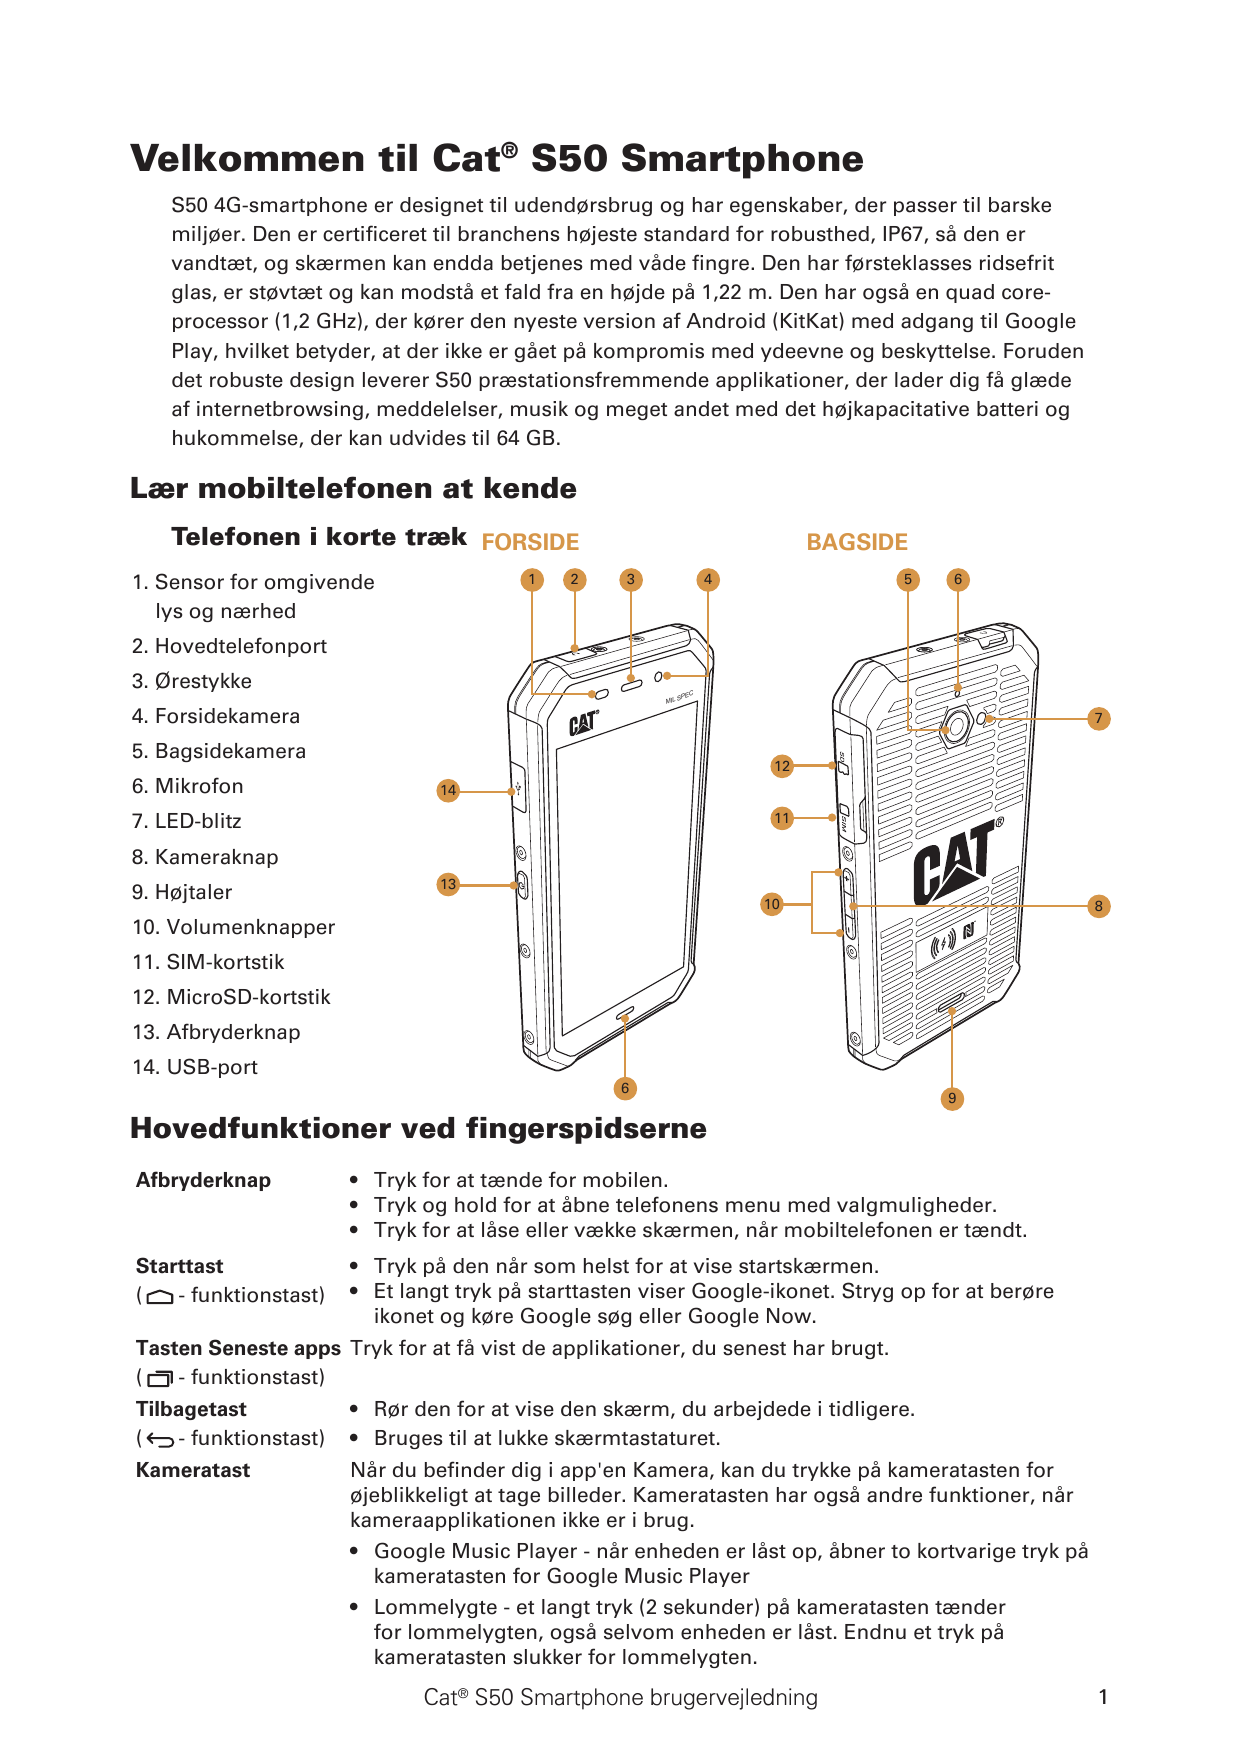 Velkommen til Cat® S50 SmartphoneS50 4G-smartphone er designet til udendørsbrug og har egenskaber, der passer til barskemiljøer.